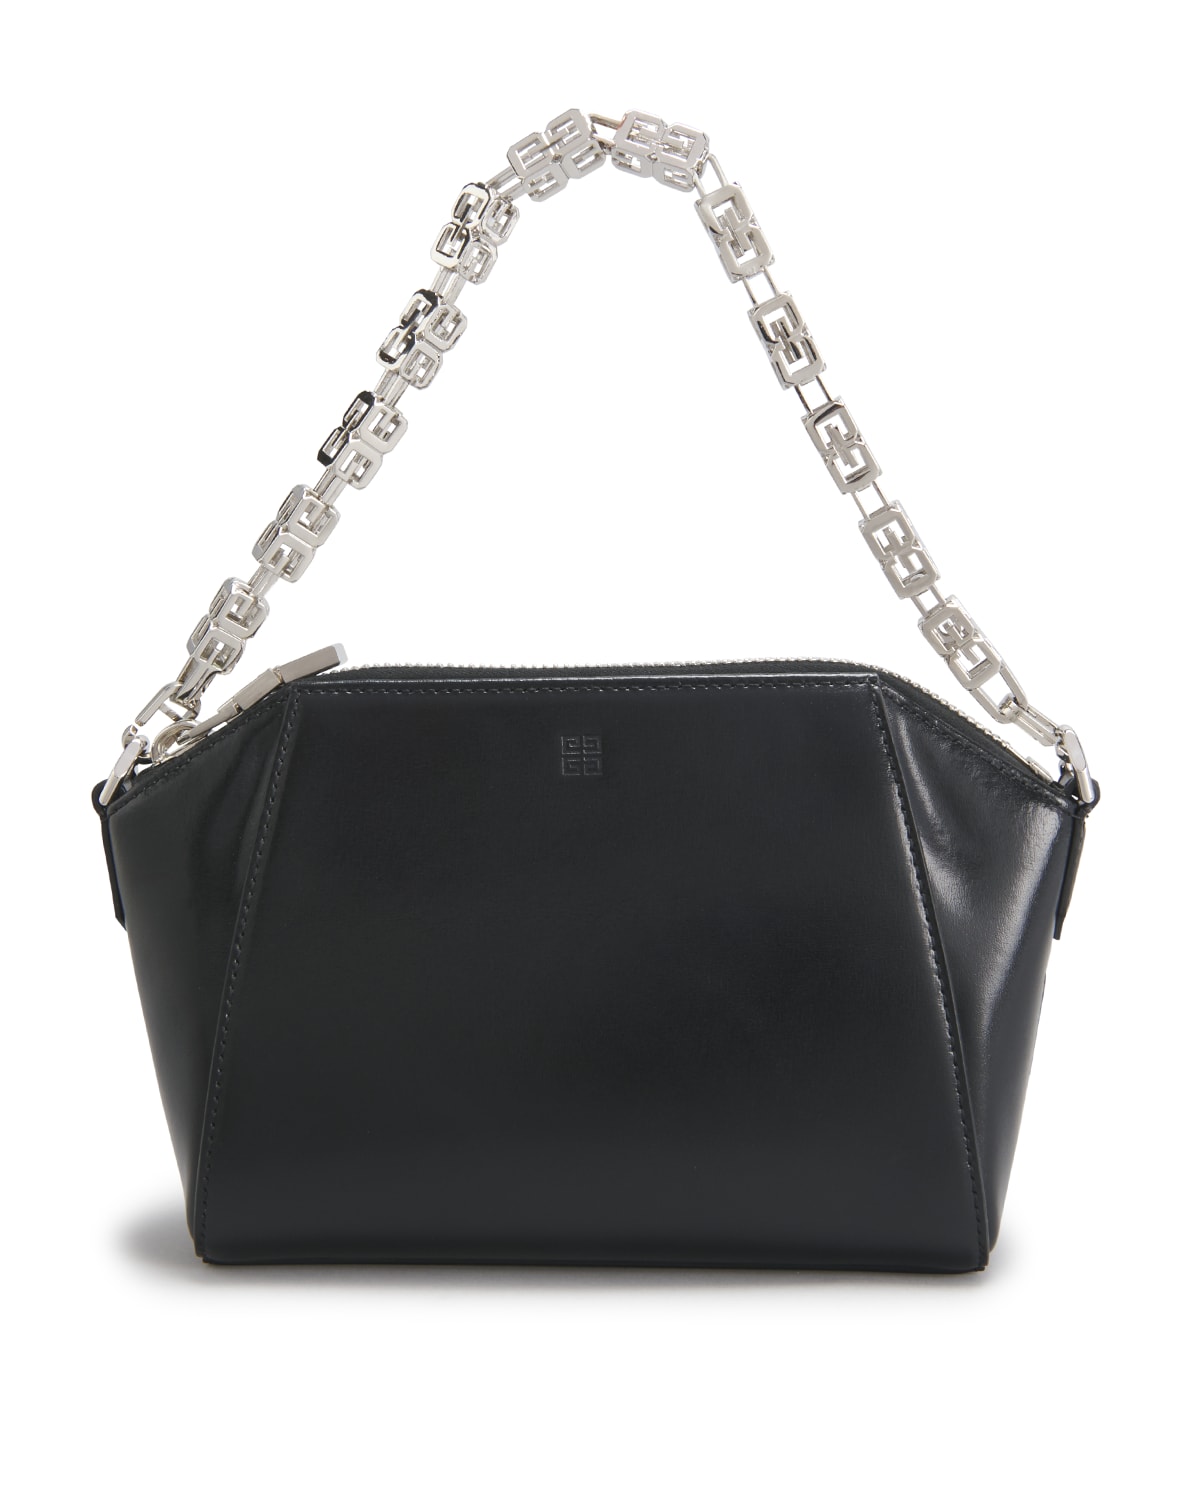 Givenchy Antigona Extra Small Leather Shoulder Bag